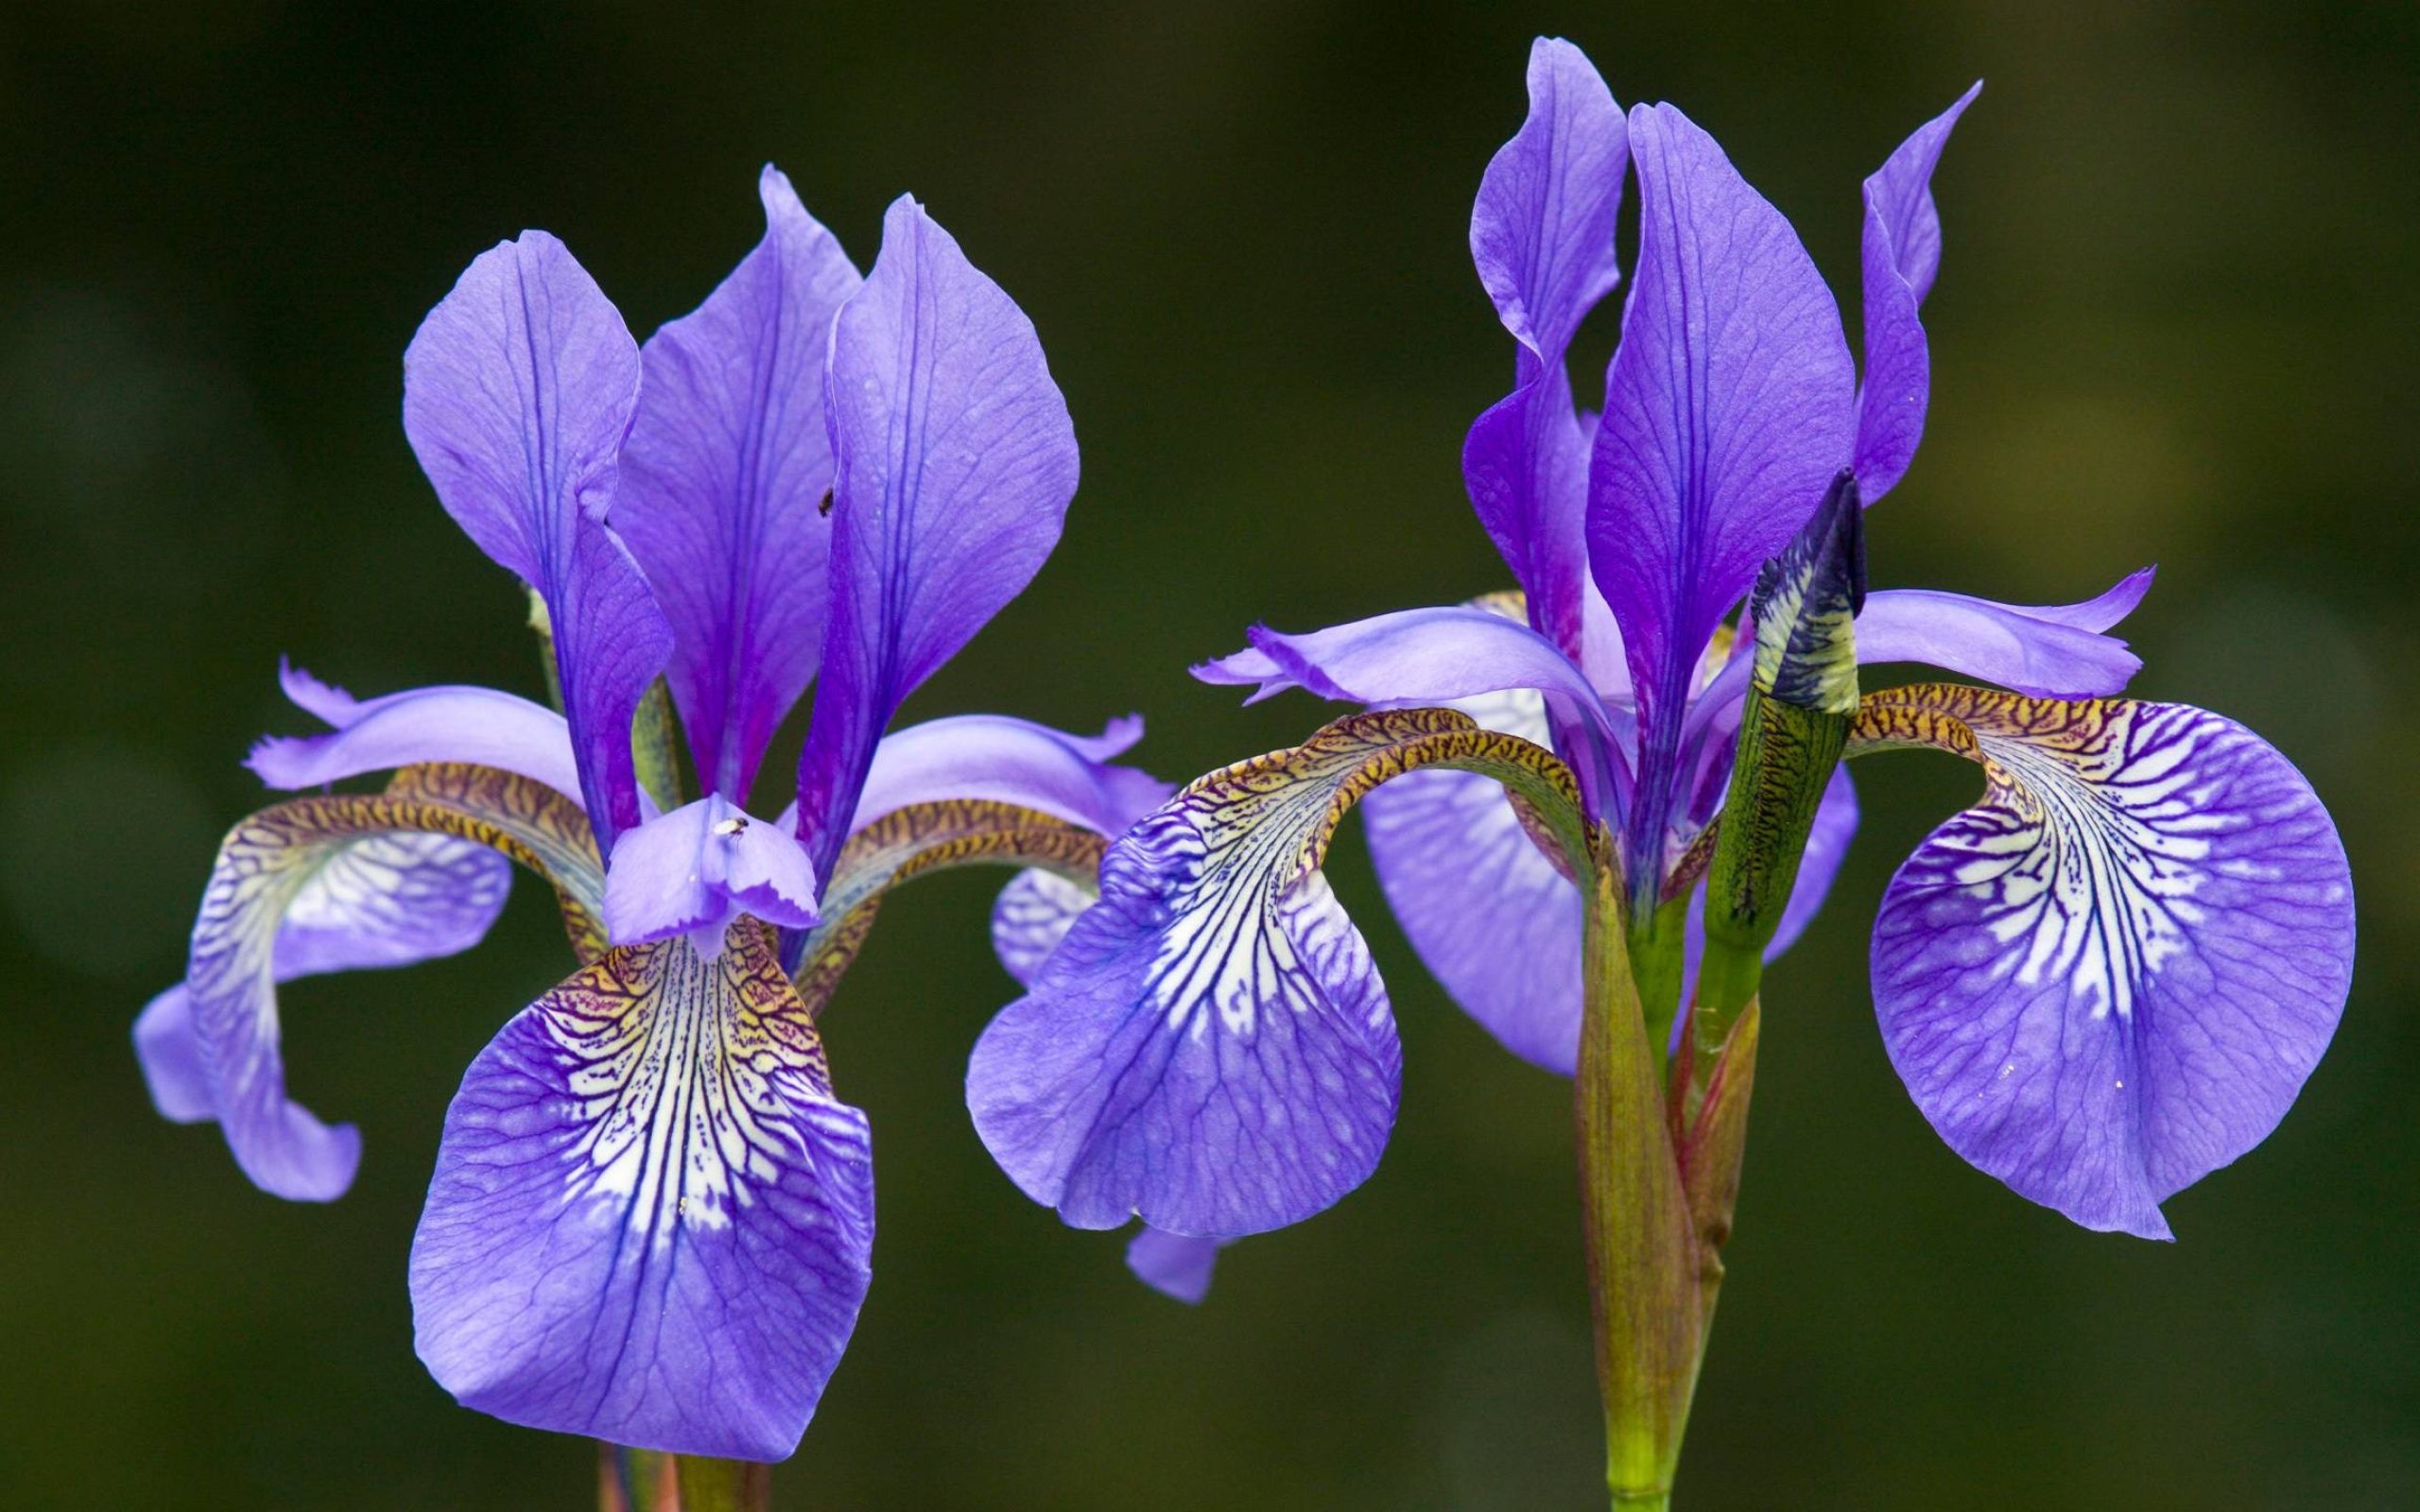 Iris, Floral beauty, Delicate blooms, Vibrant colors, 2560x1600 HD Desktop